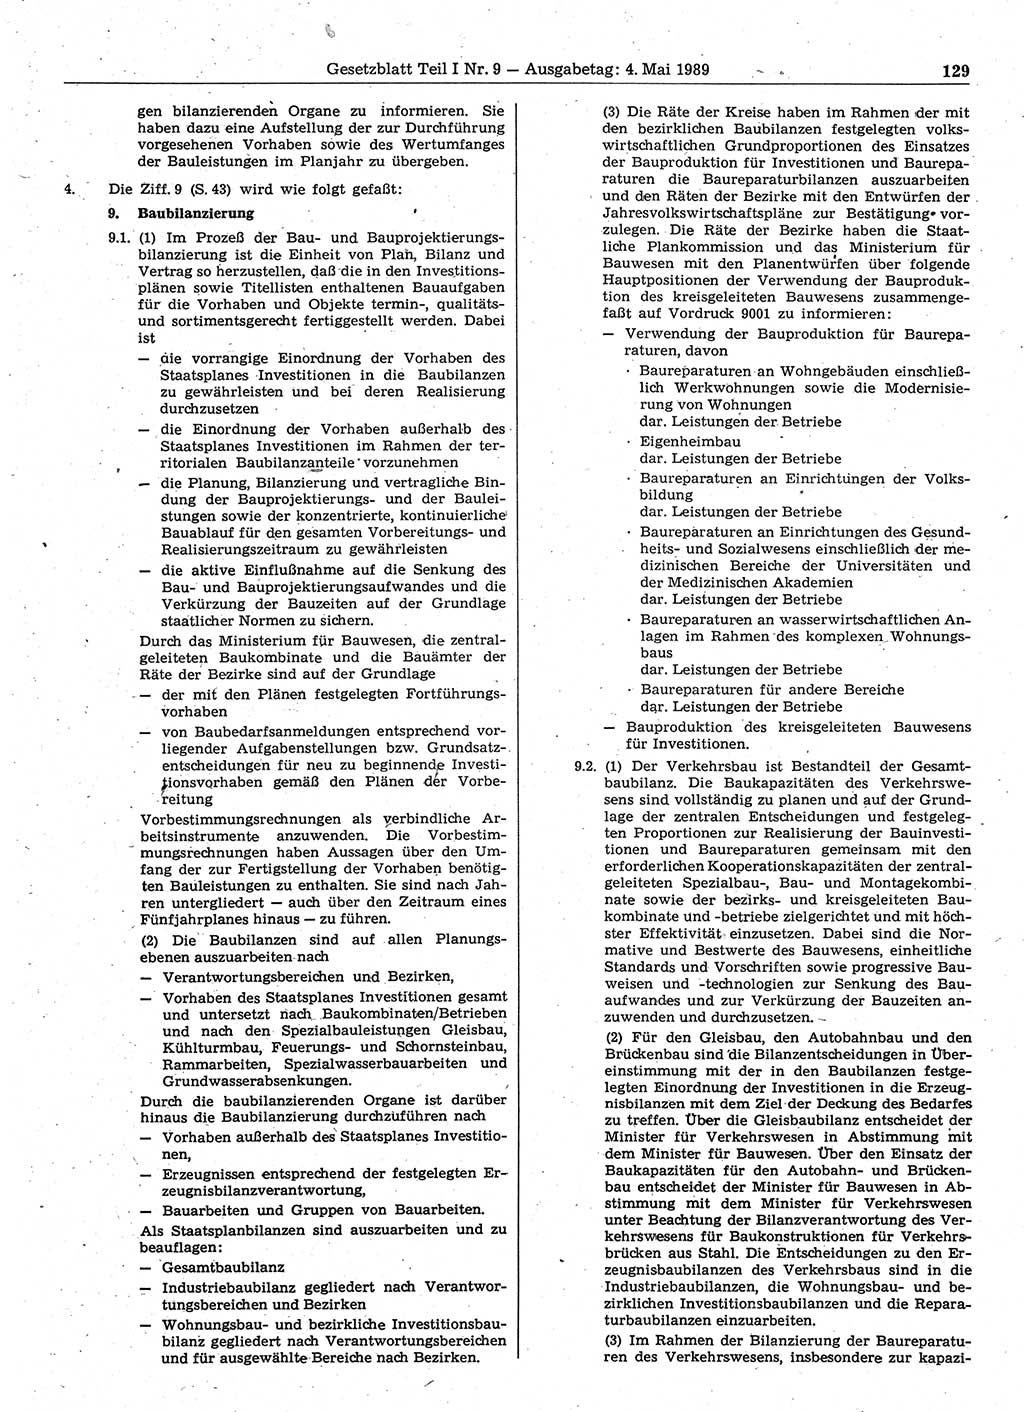 Gesetzblatt (GBl.) der Deutschen Demokratischen Republik (DDR) Teil Ⅰ 1989, Seite 129 (GBl. DDR Ⅰ 1989, S. 129)